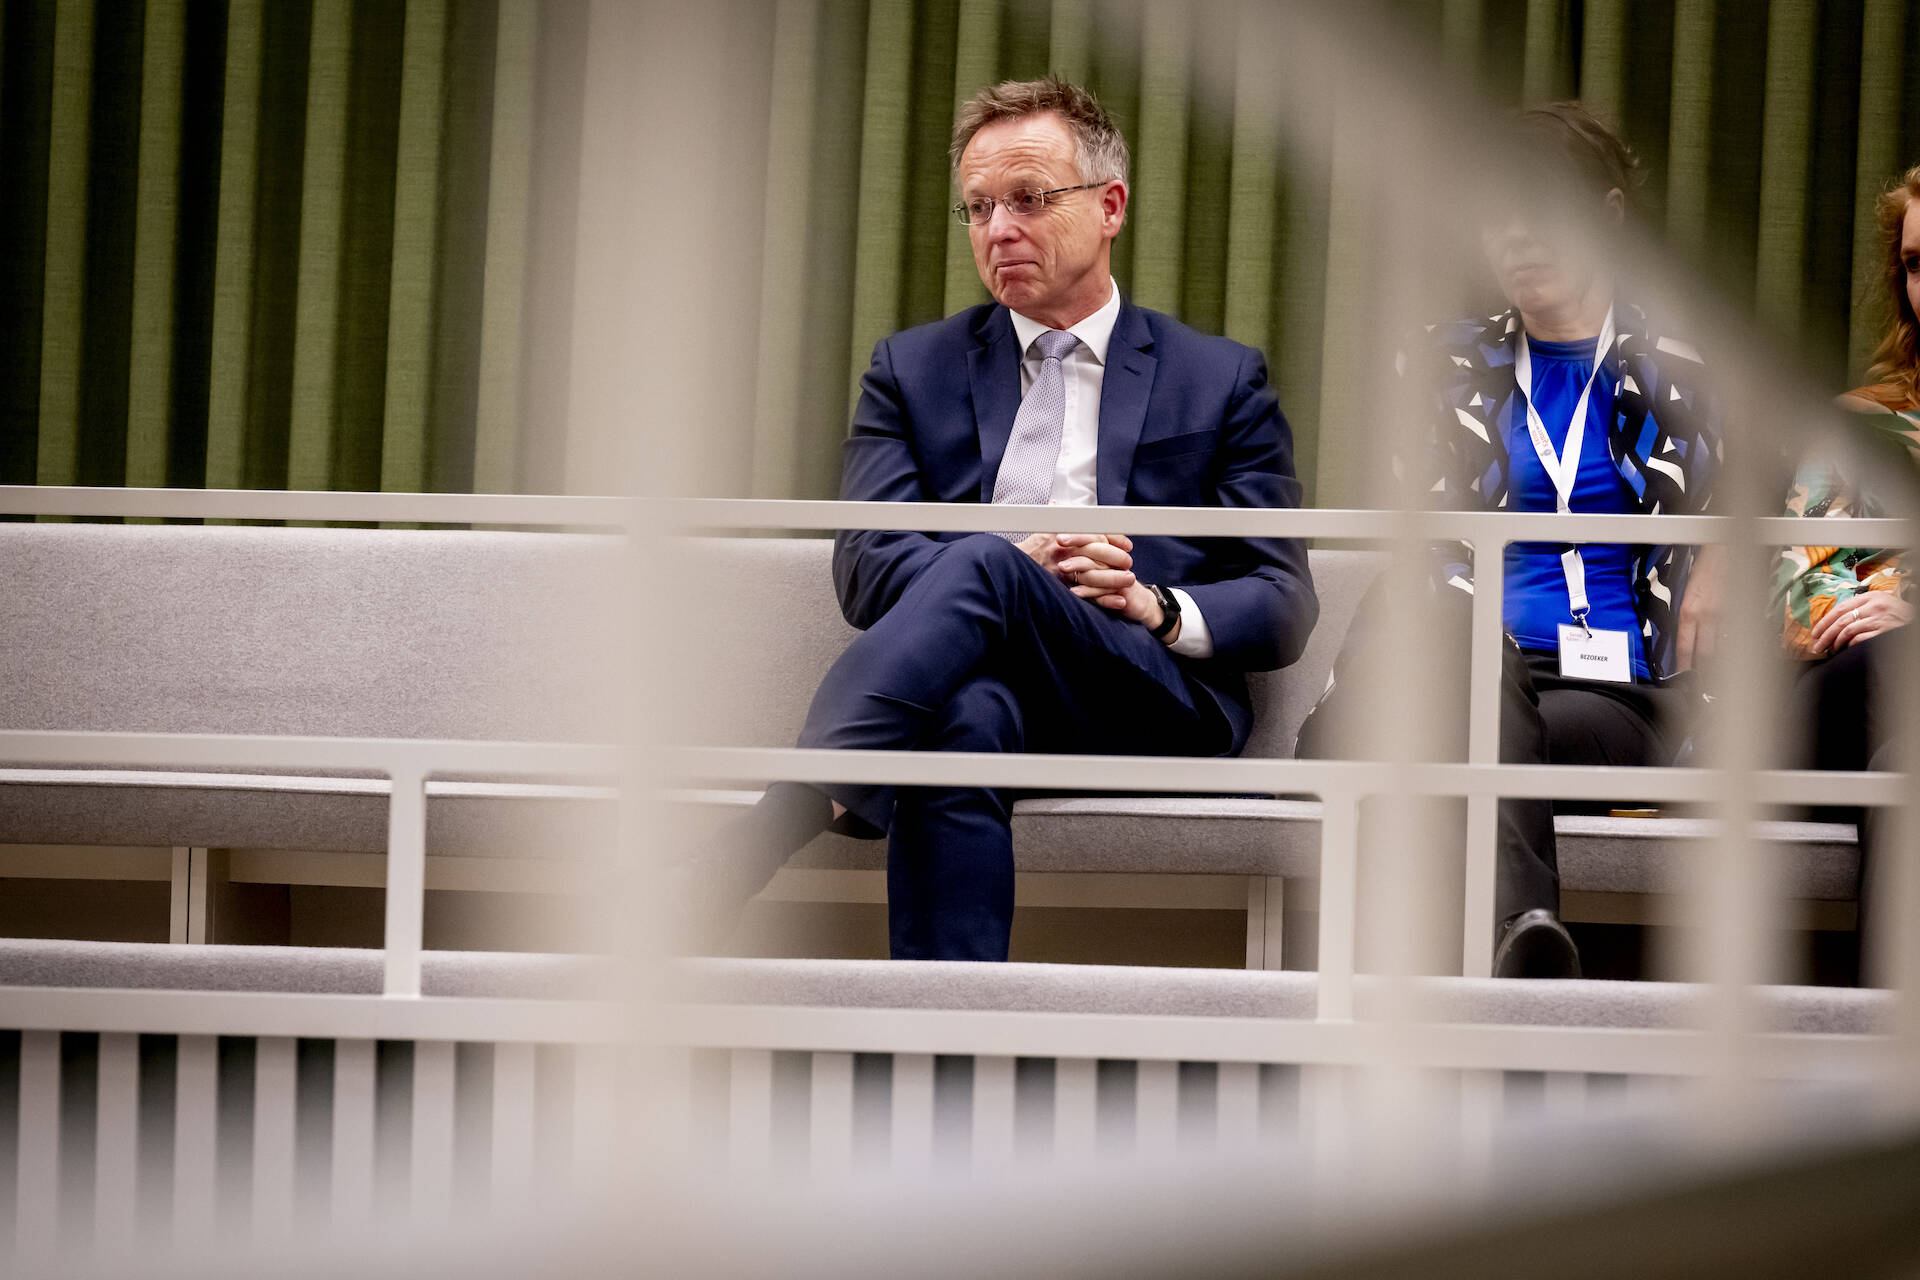 De Commissaris van de Koning van Groningen, René Paas, beluisterde het debat vanaf de publieke tribune